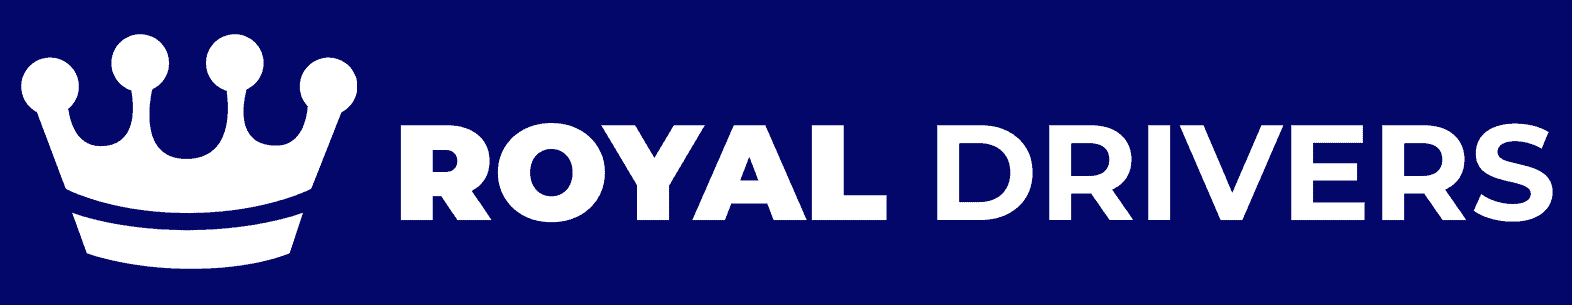 Royal Drivers Of Canada Logo